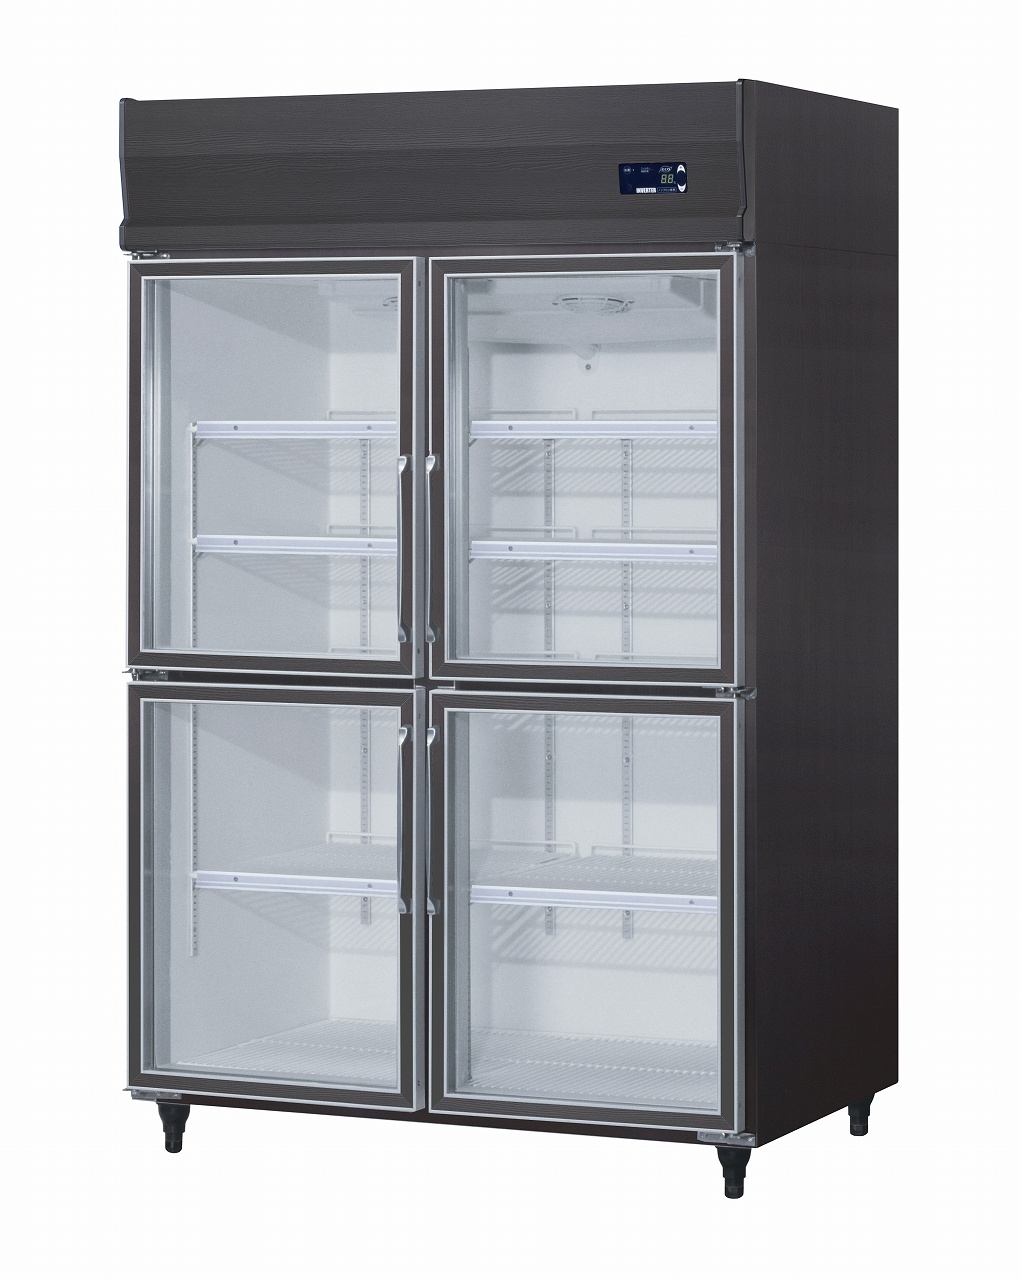 [上置型]インバータ制御冷蔵ショーケース エコ蔵くん | 店舗用冷凍